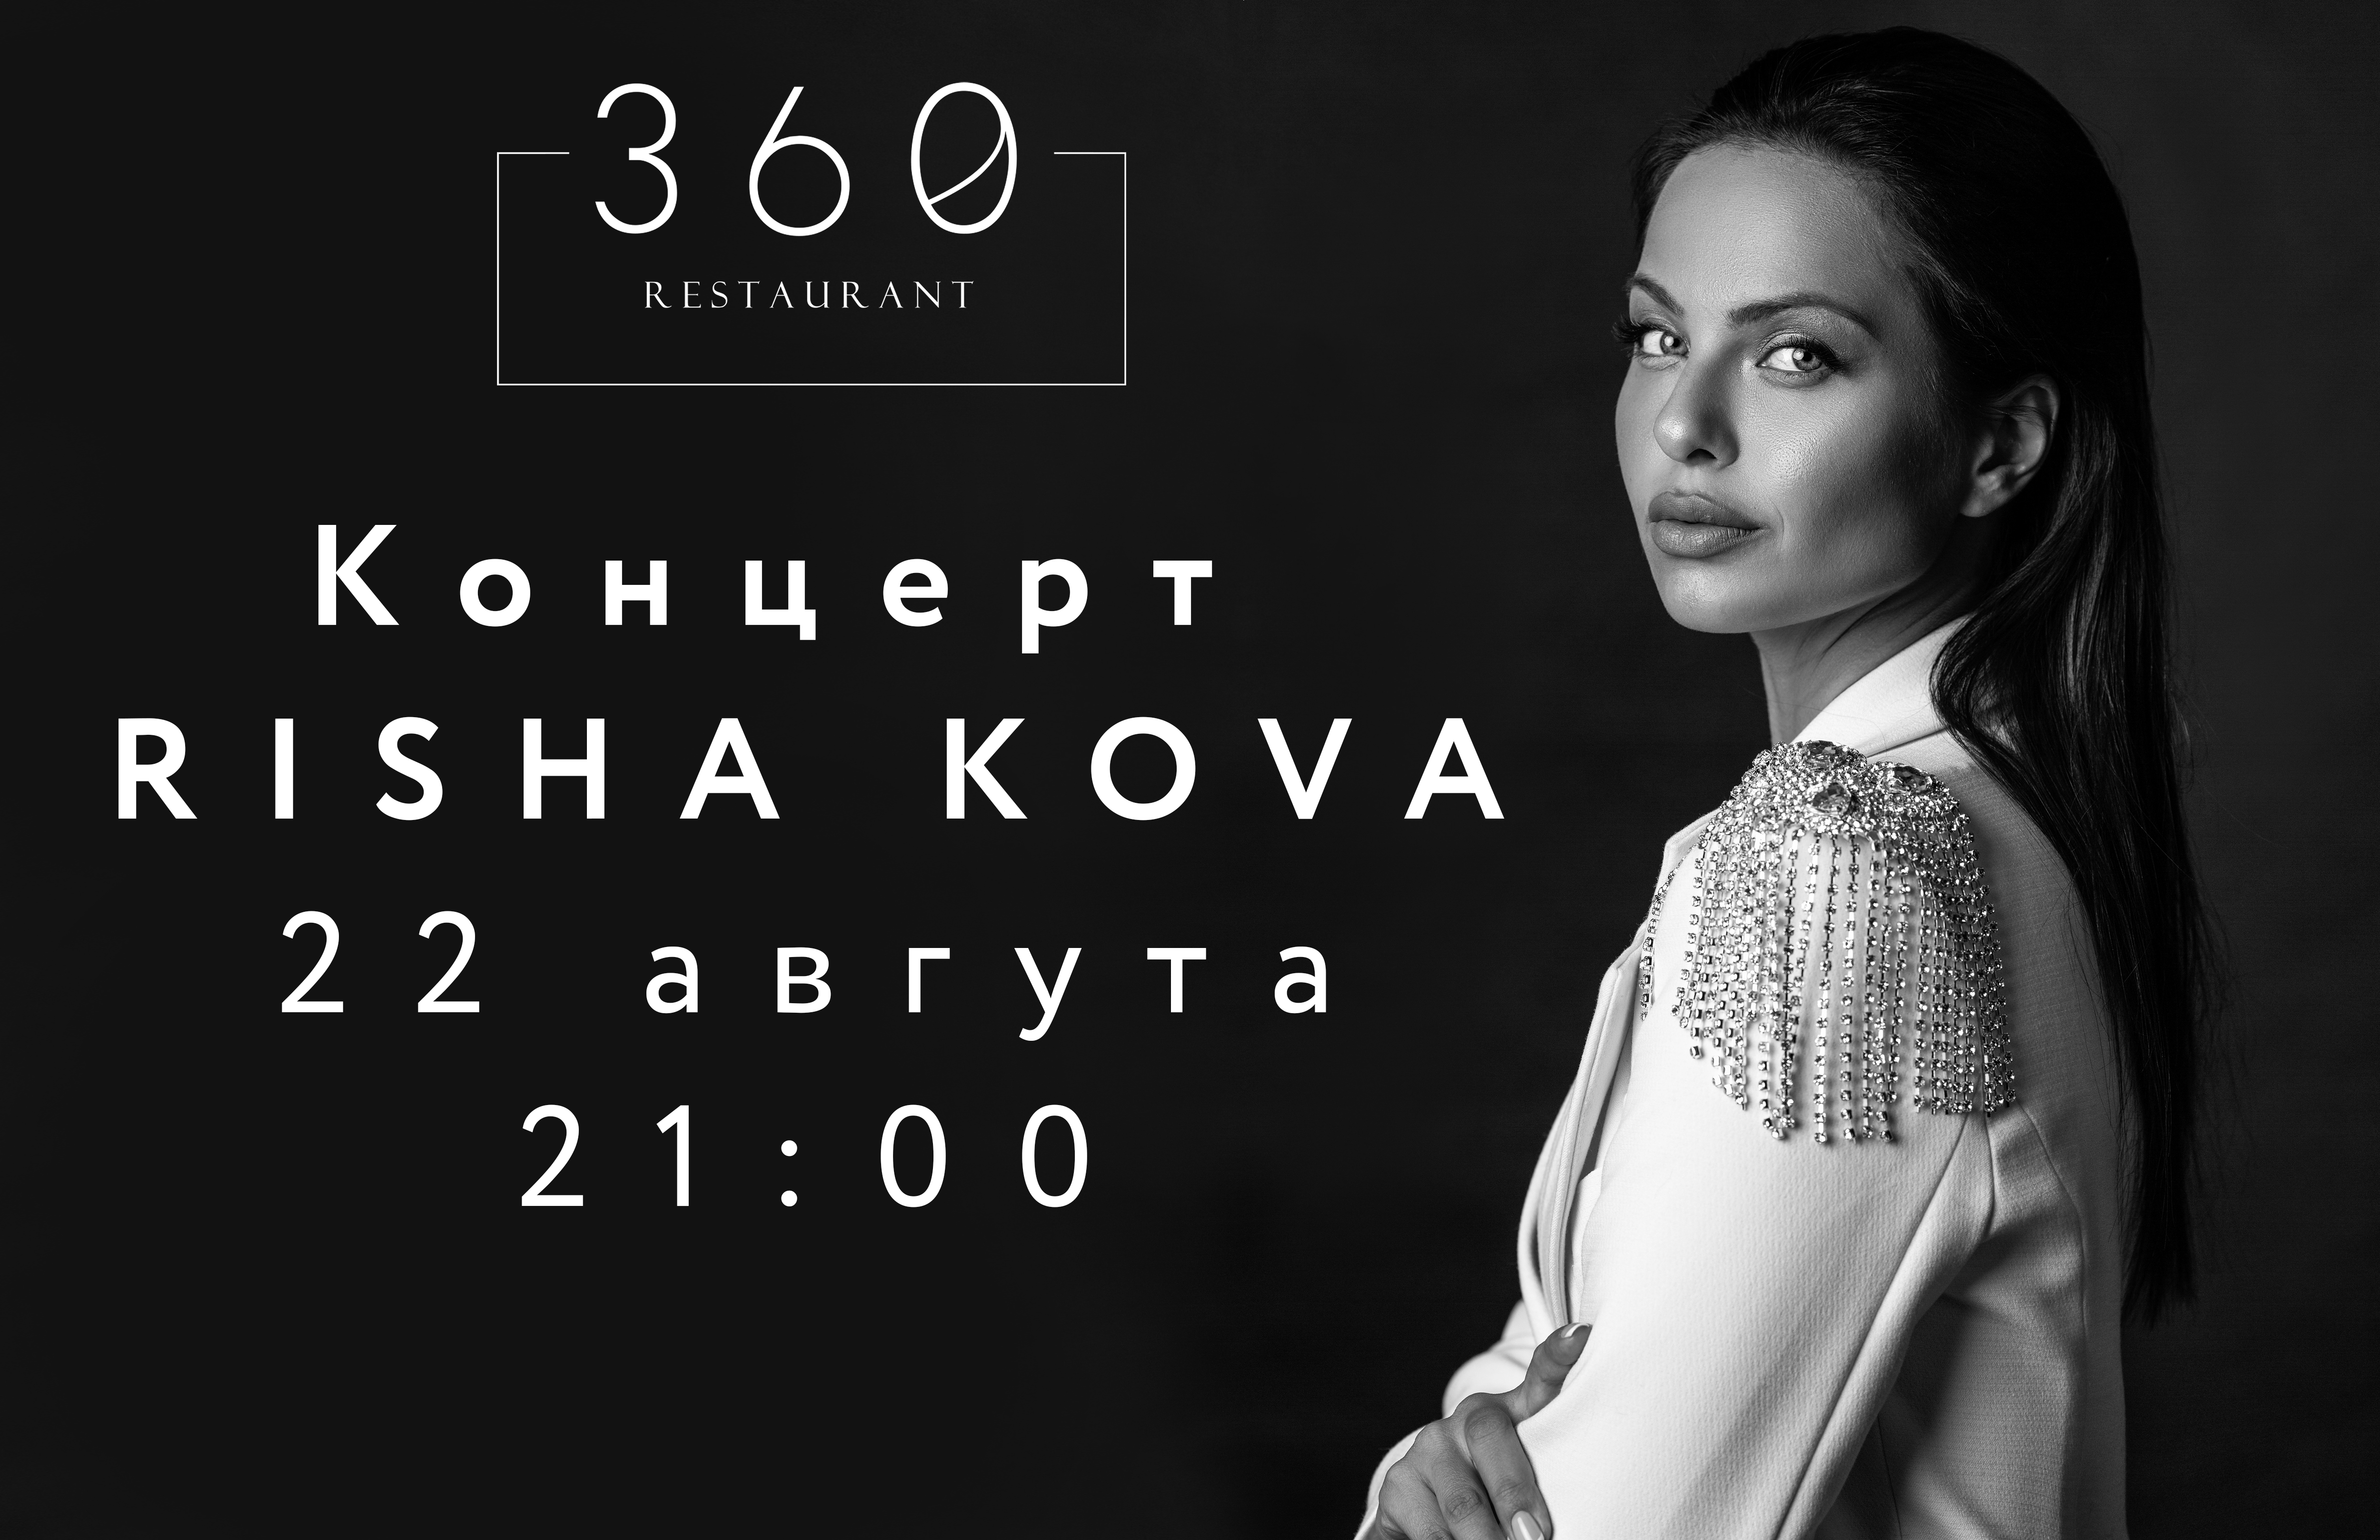 Афиша "Риша Кова" ресторана "360